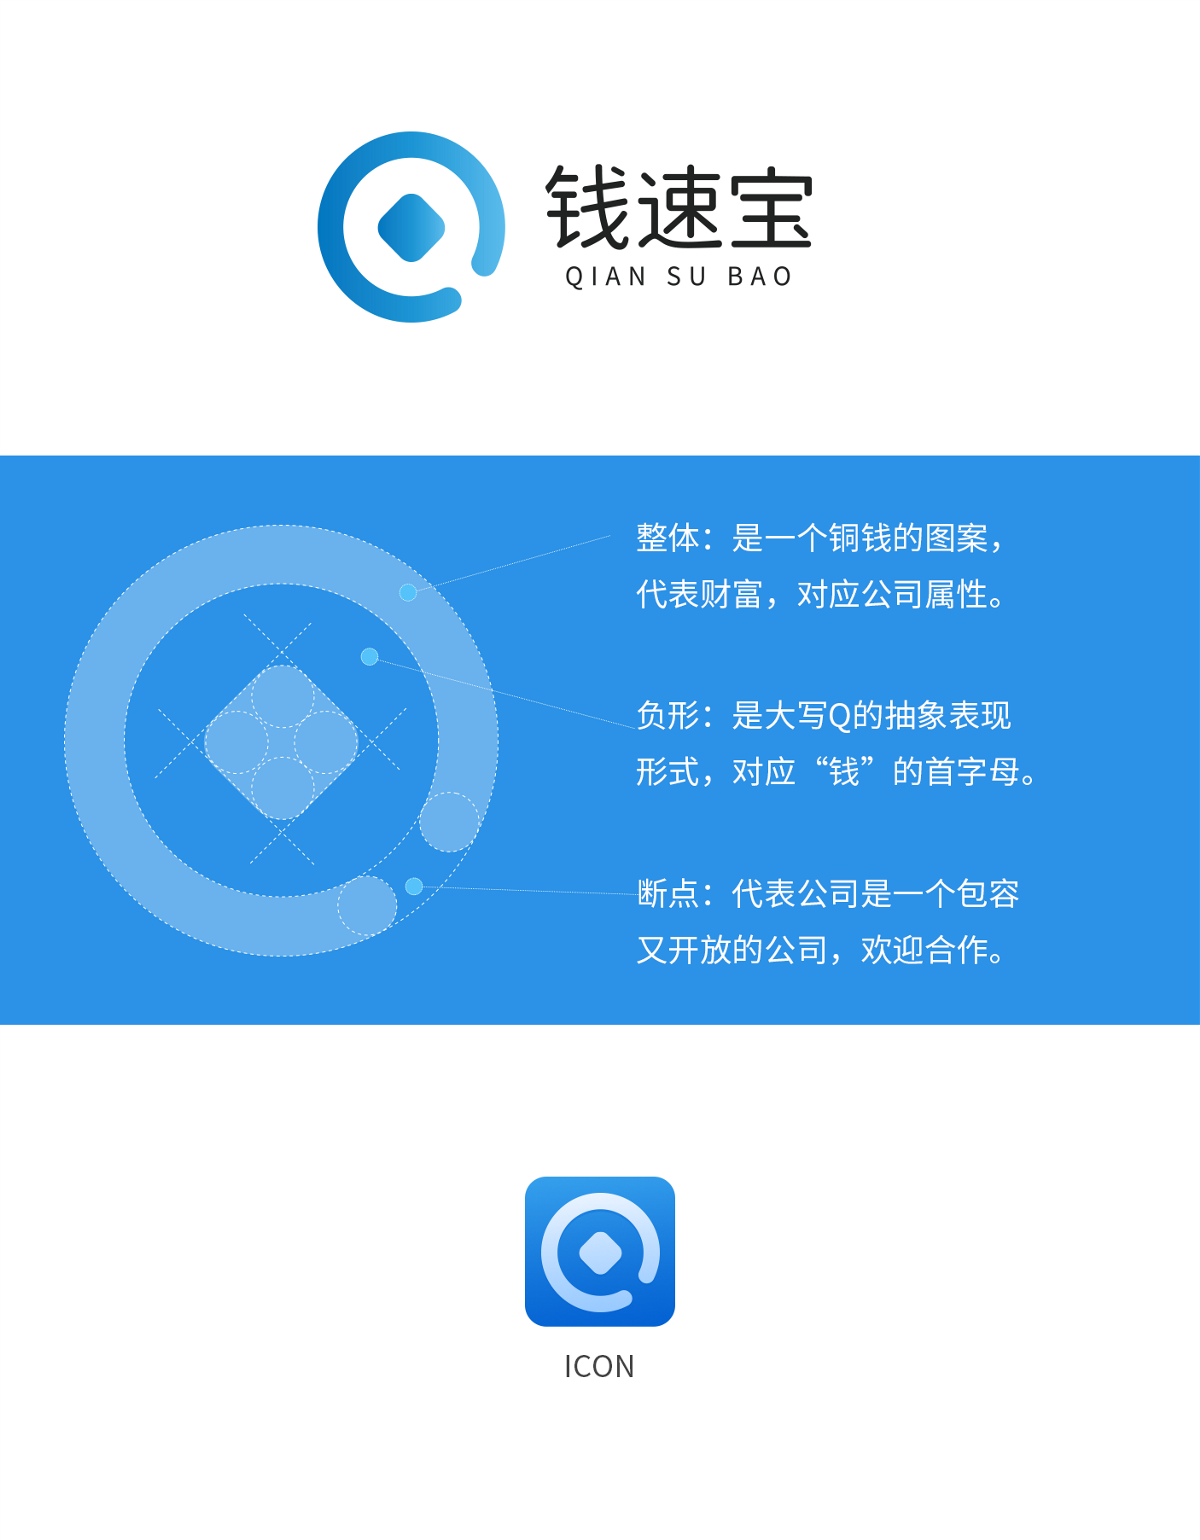 钱速宝logo设计